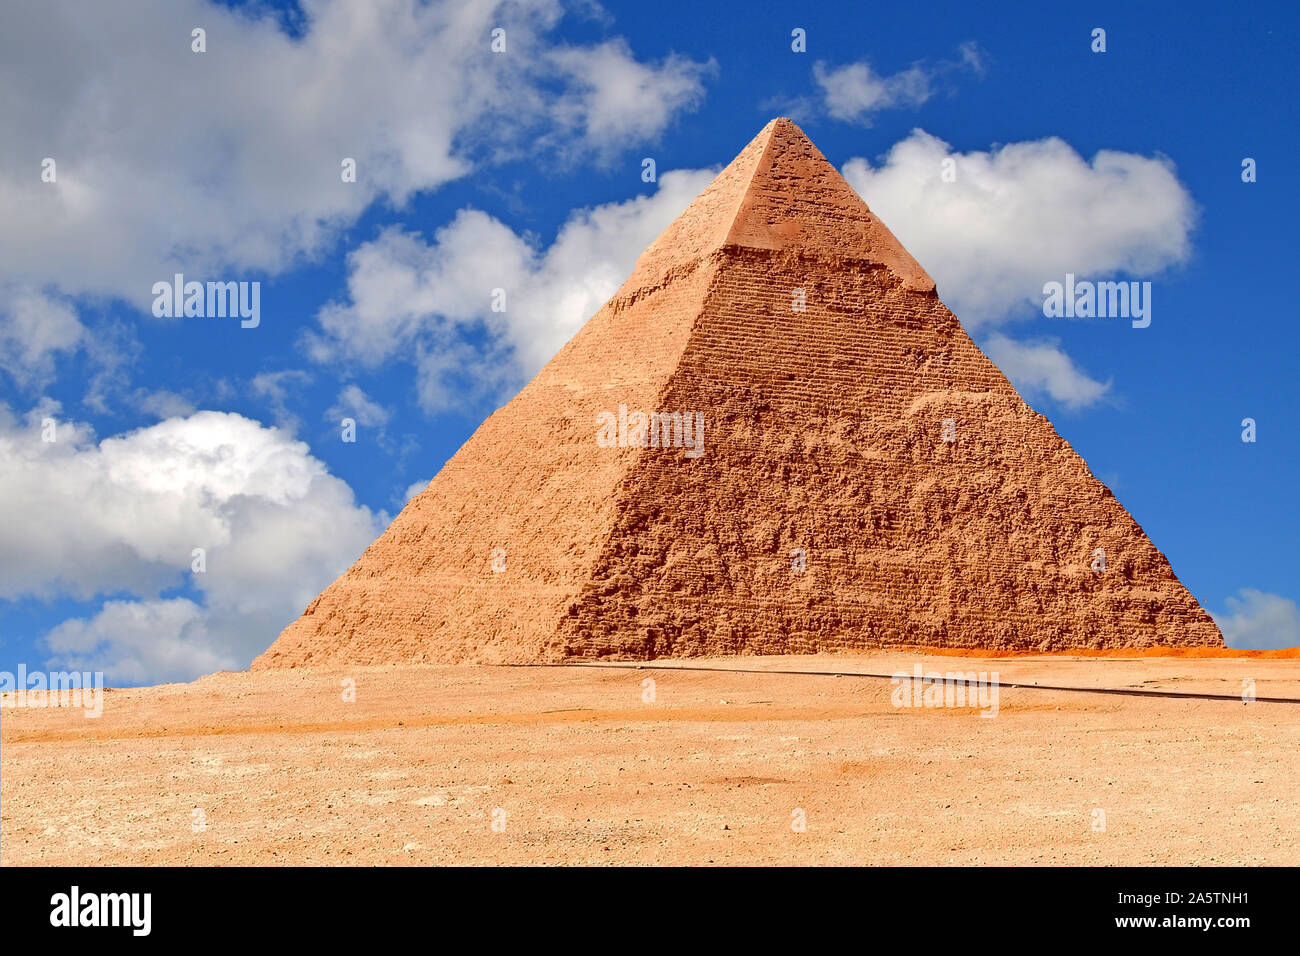 Pyramiden von Gizeh, Niltal, Ägypten Stock Photo